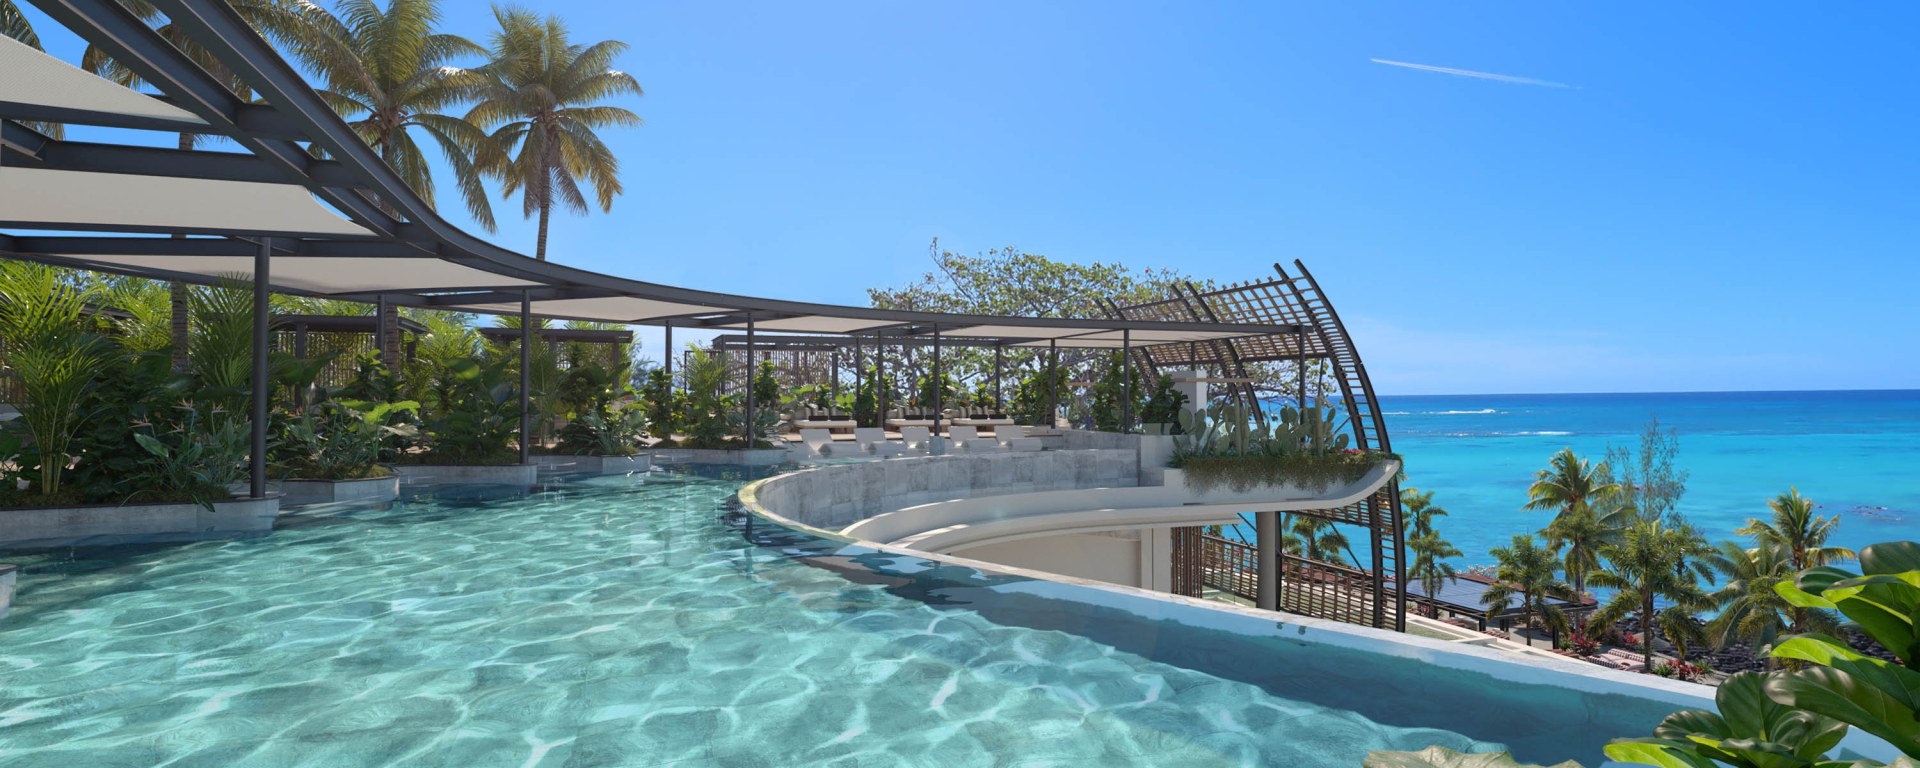 Luxus Hoteleroeffnung Mauritius Lux Grand Baie 1